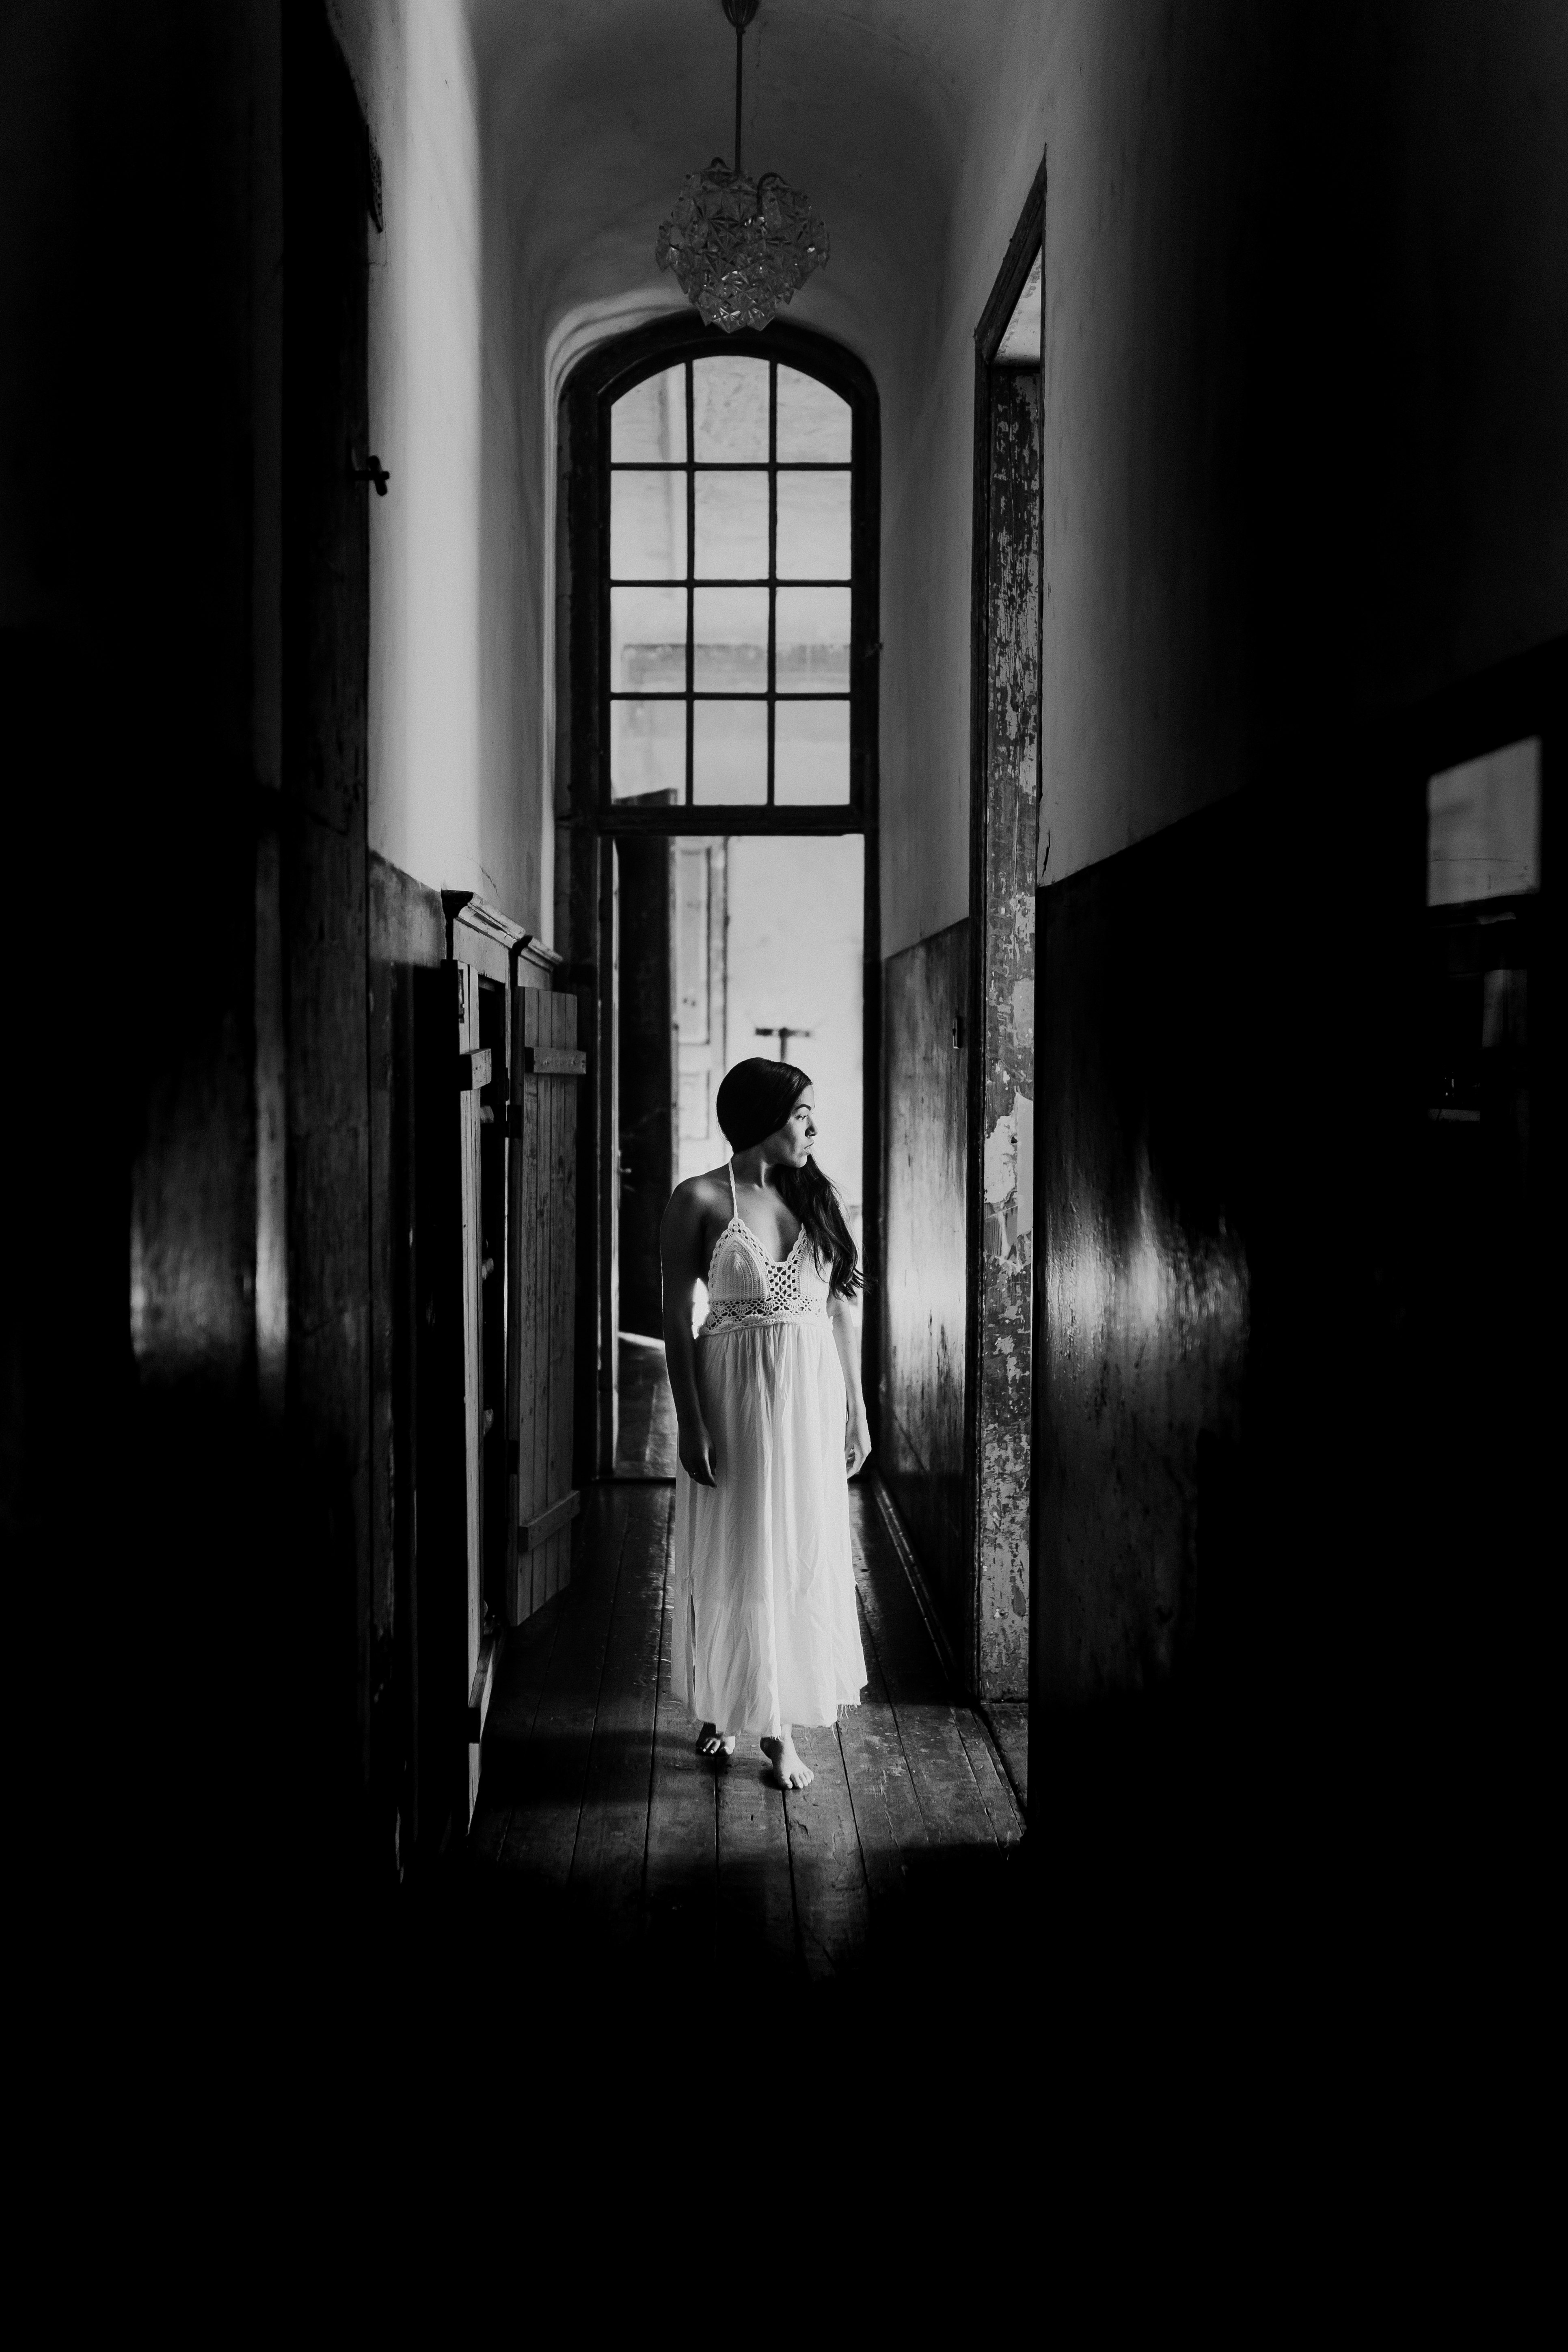 woman in white dress walking on hallway